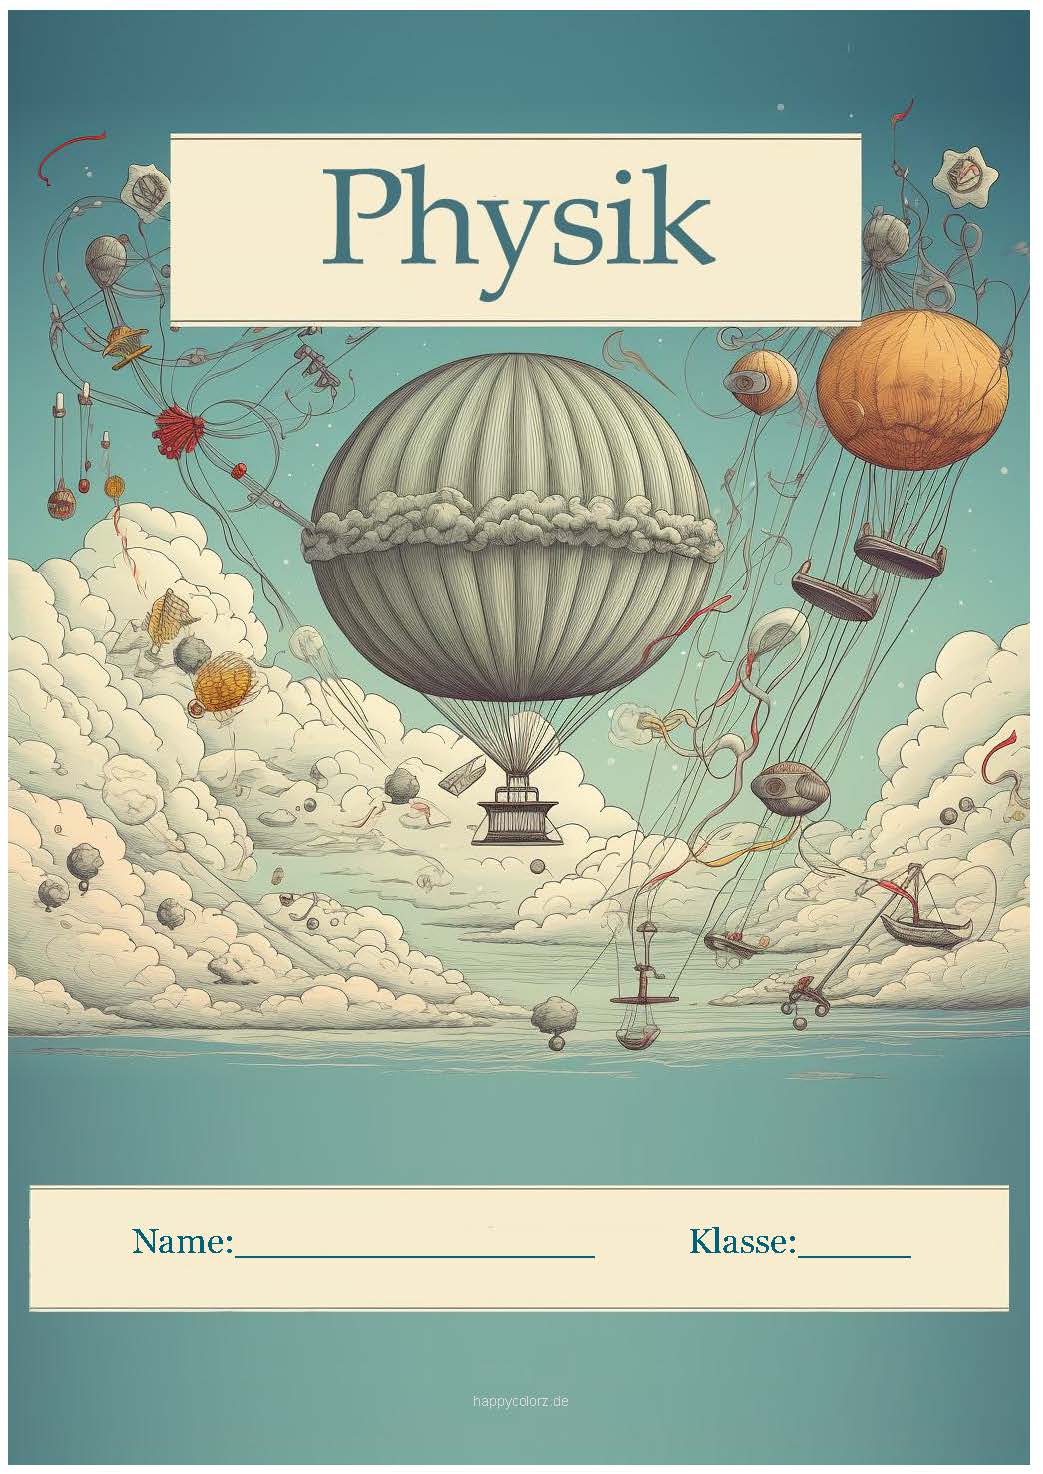 Farbiges Physik Deckblatt zum kostenlosen ausdrucken (pdf)